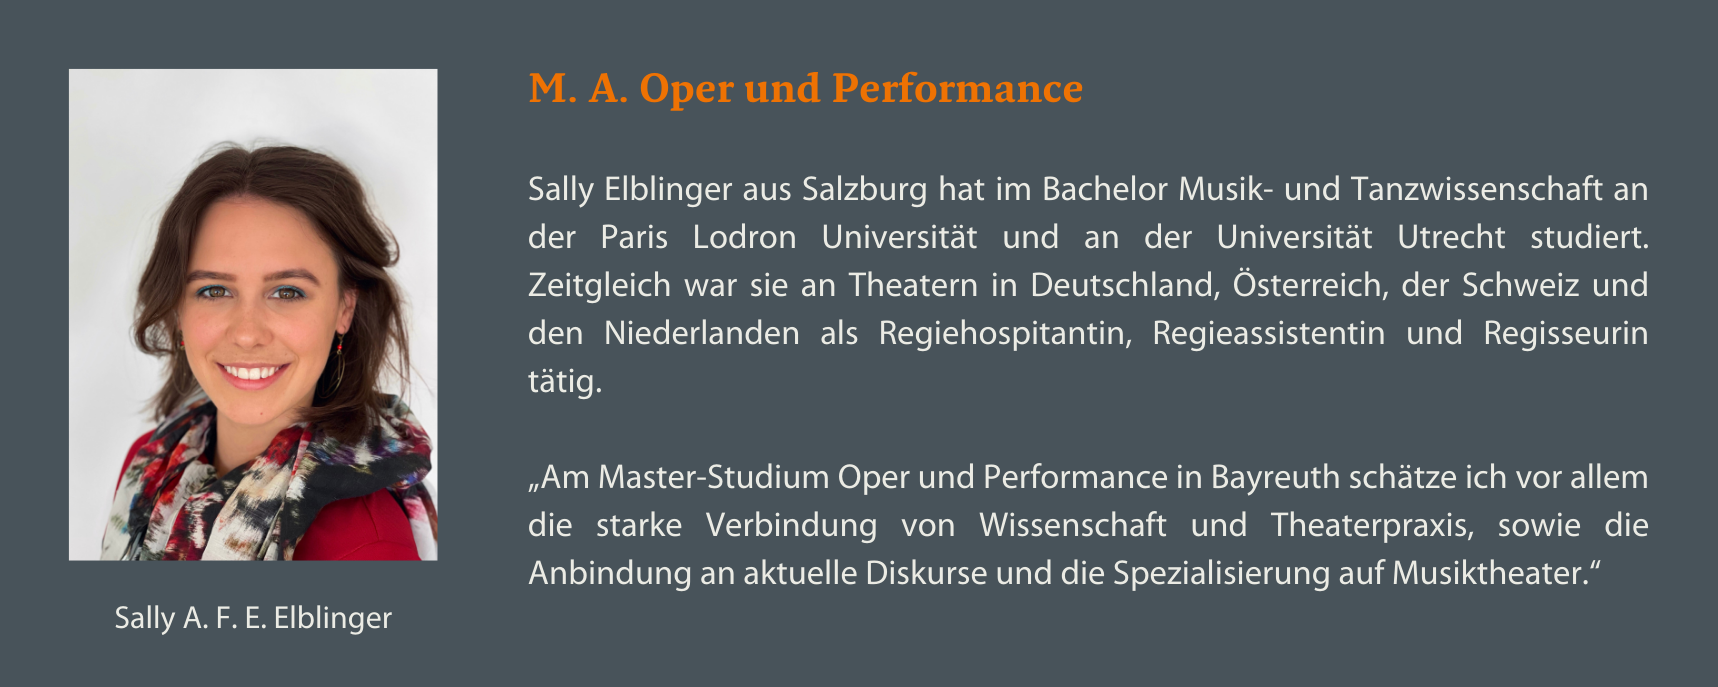 M. A. Oper und Performance Sally Elblinger Statement